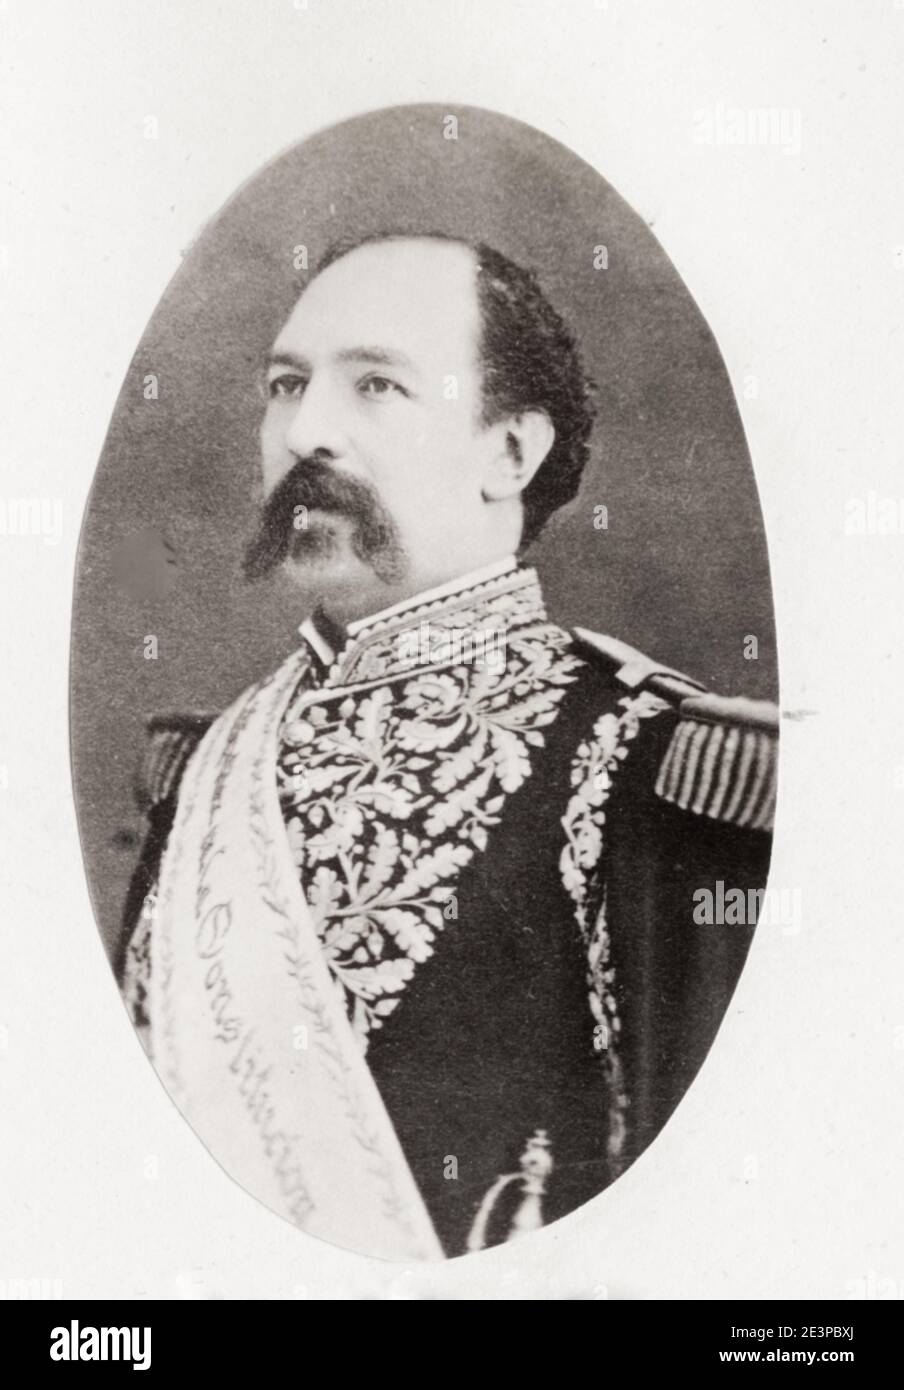 Photo du XIXe siècle : Mario Ignacio Francisco Tomás Antonio de Veintemilla y Villacís (31 juillet 1828 – 19 juillet 1908) était président de l'Équateur du 8 septembre 1876 au 10 janvier 1883 Banque D'Images